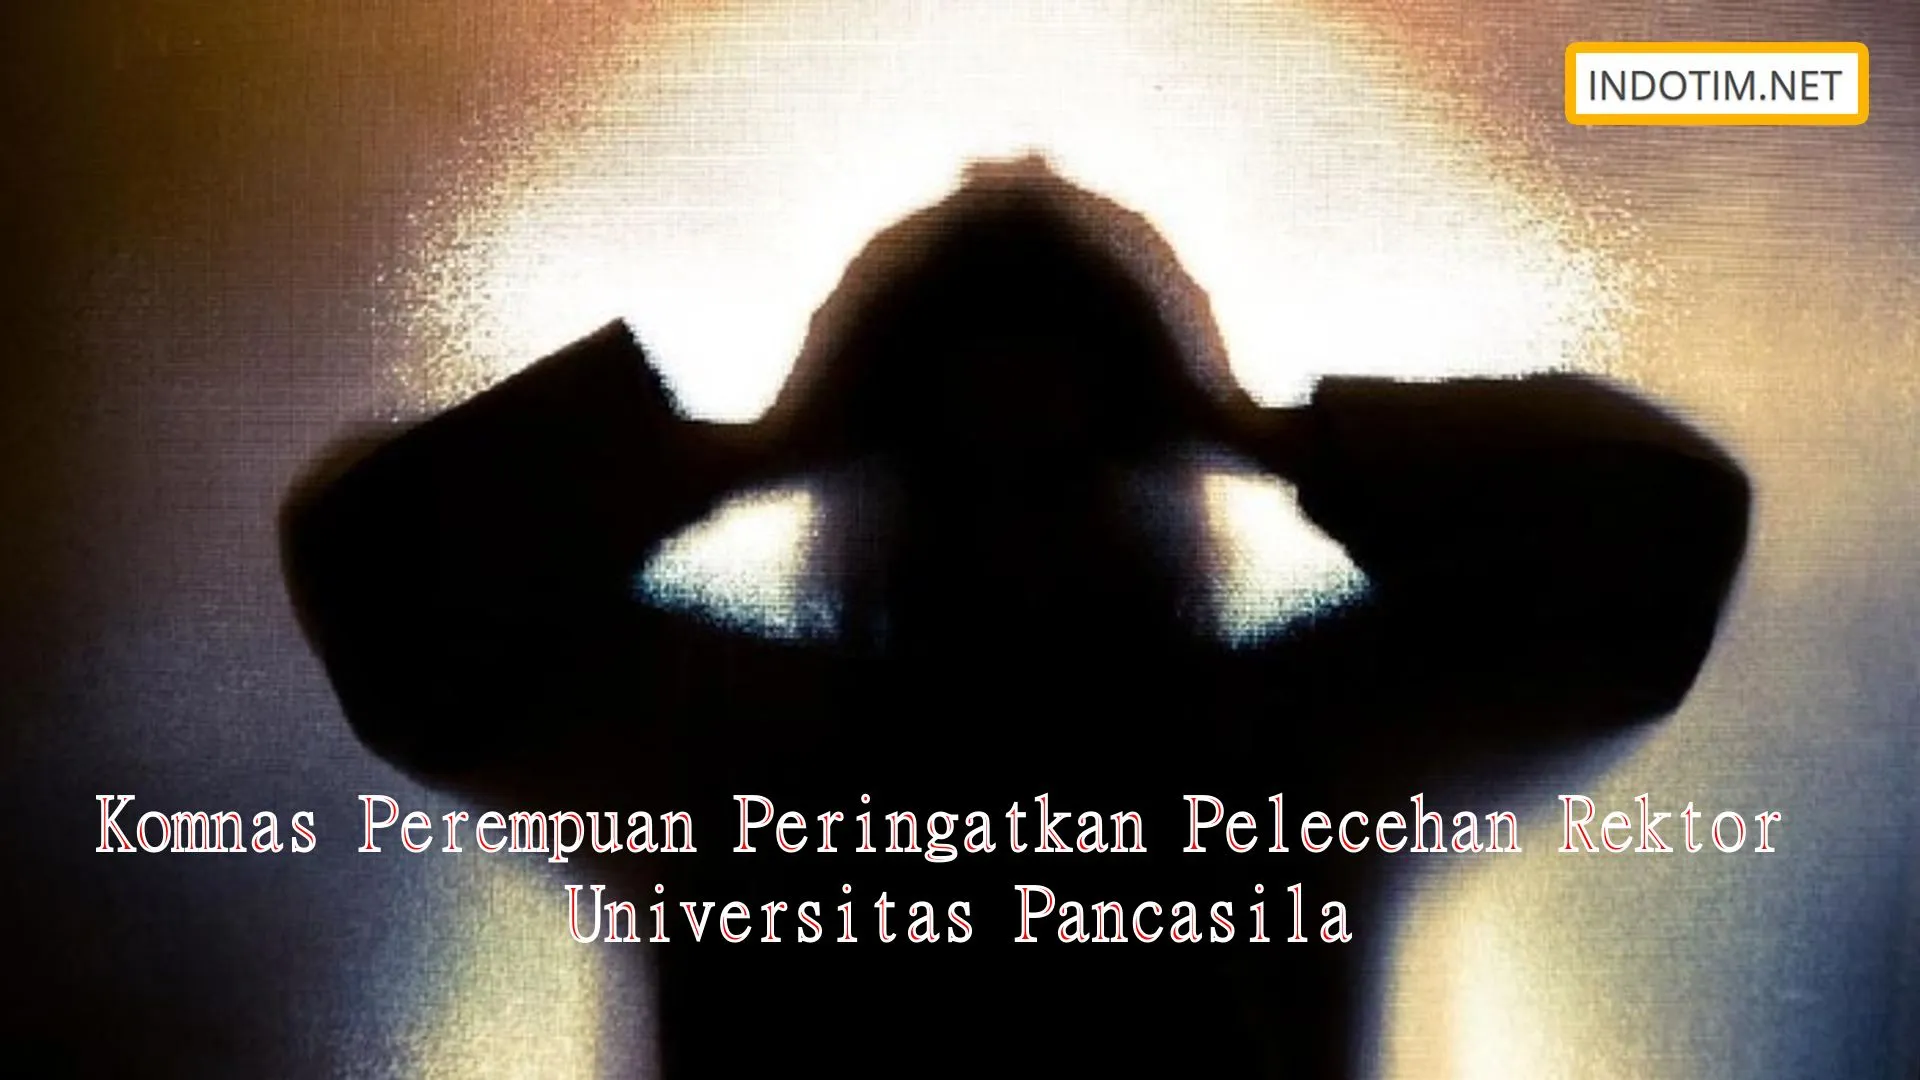 Komnas Perempuan Peringatkan Pelecehan Rektor Universitas Pancasila